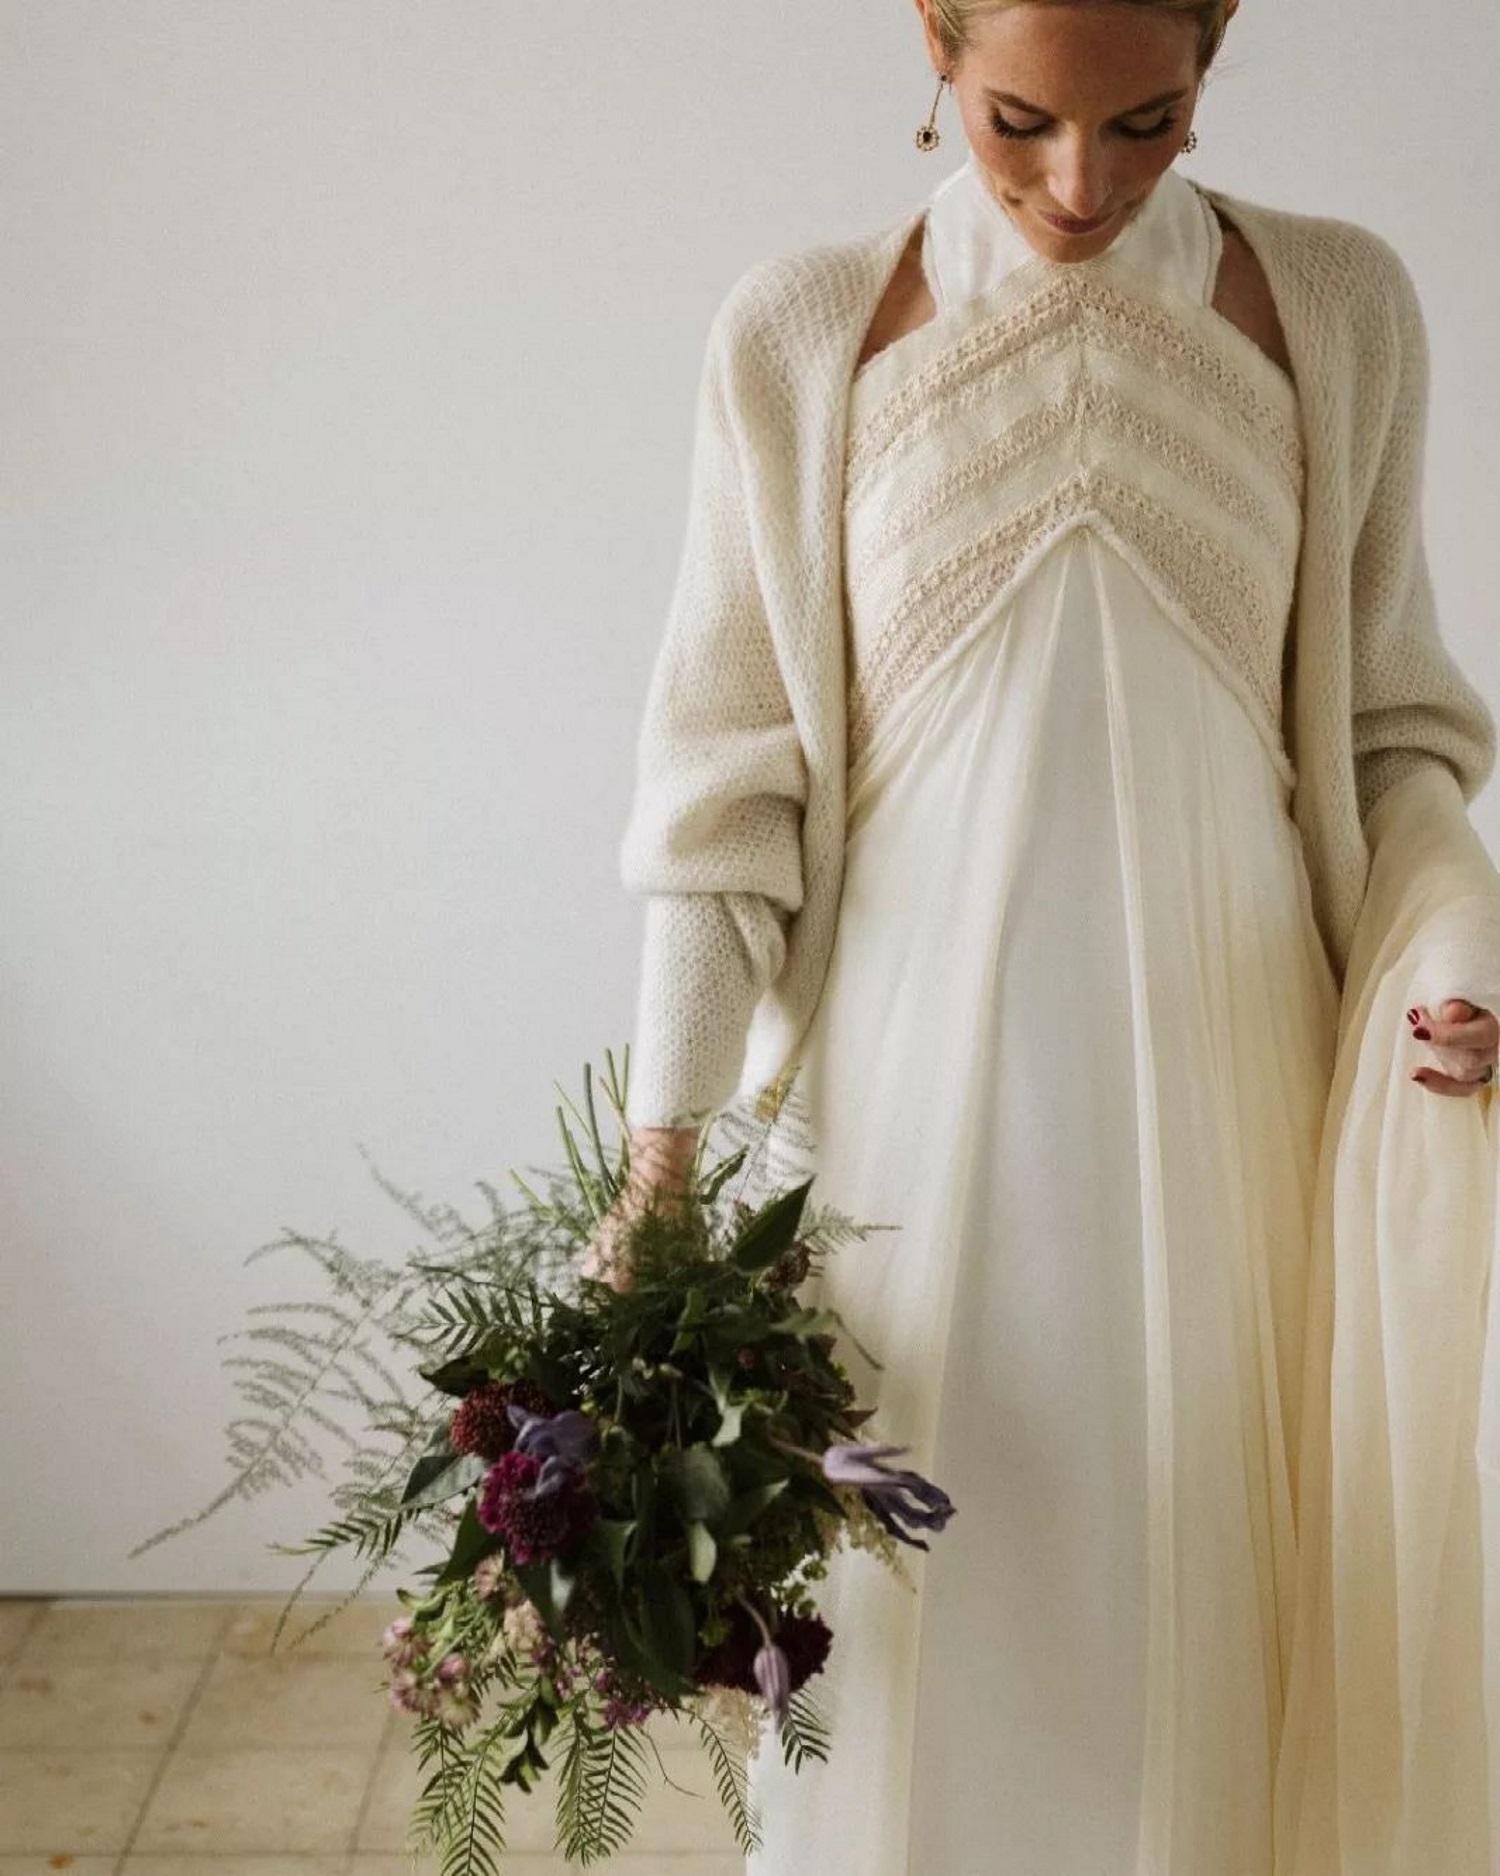 Elena se casó el 25/02/2023 en Segovia con un vestido de Inuñez.